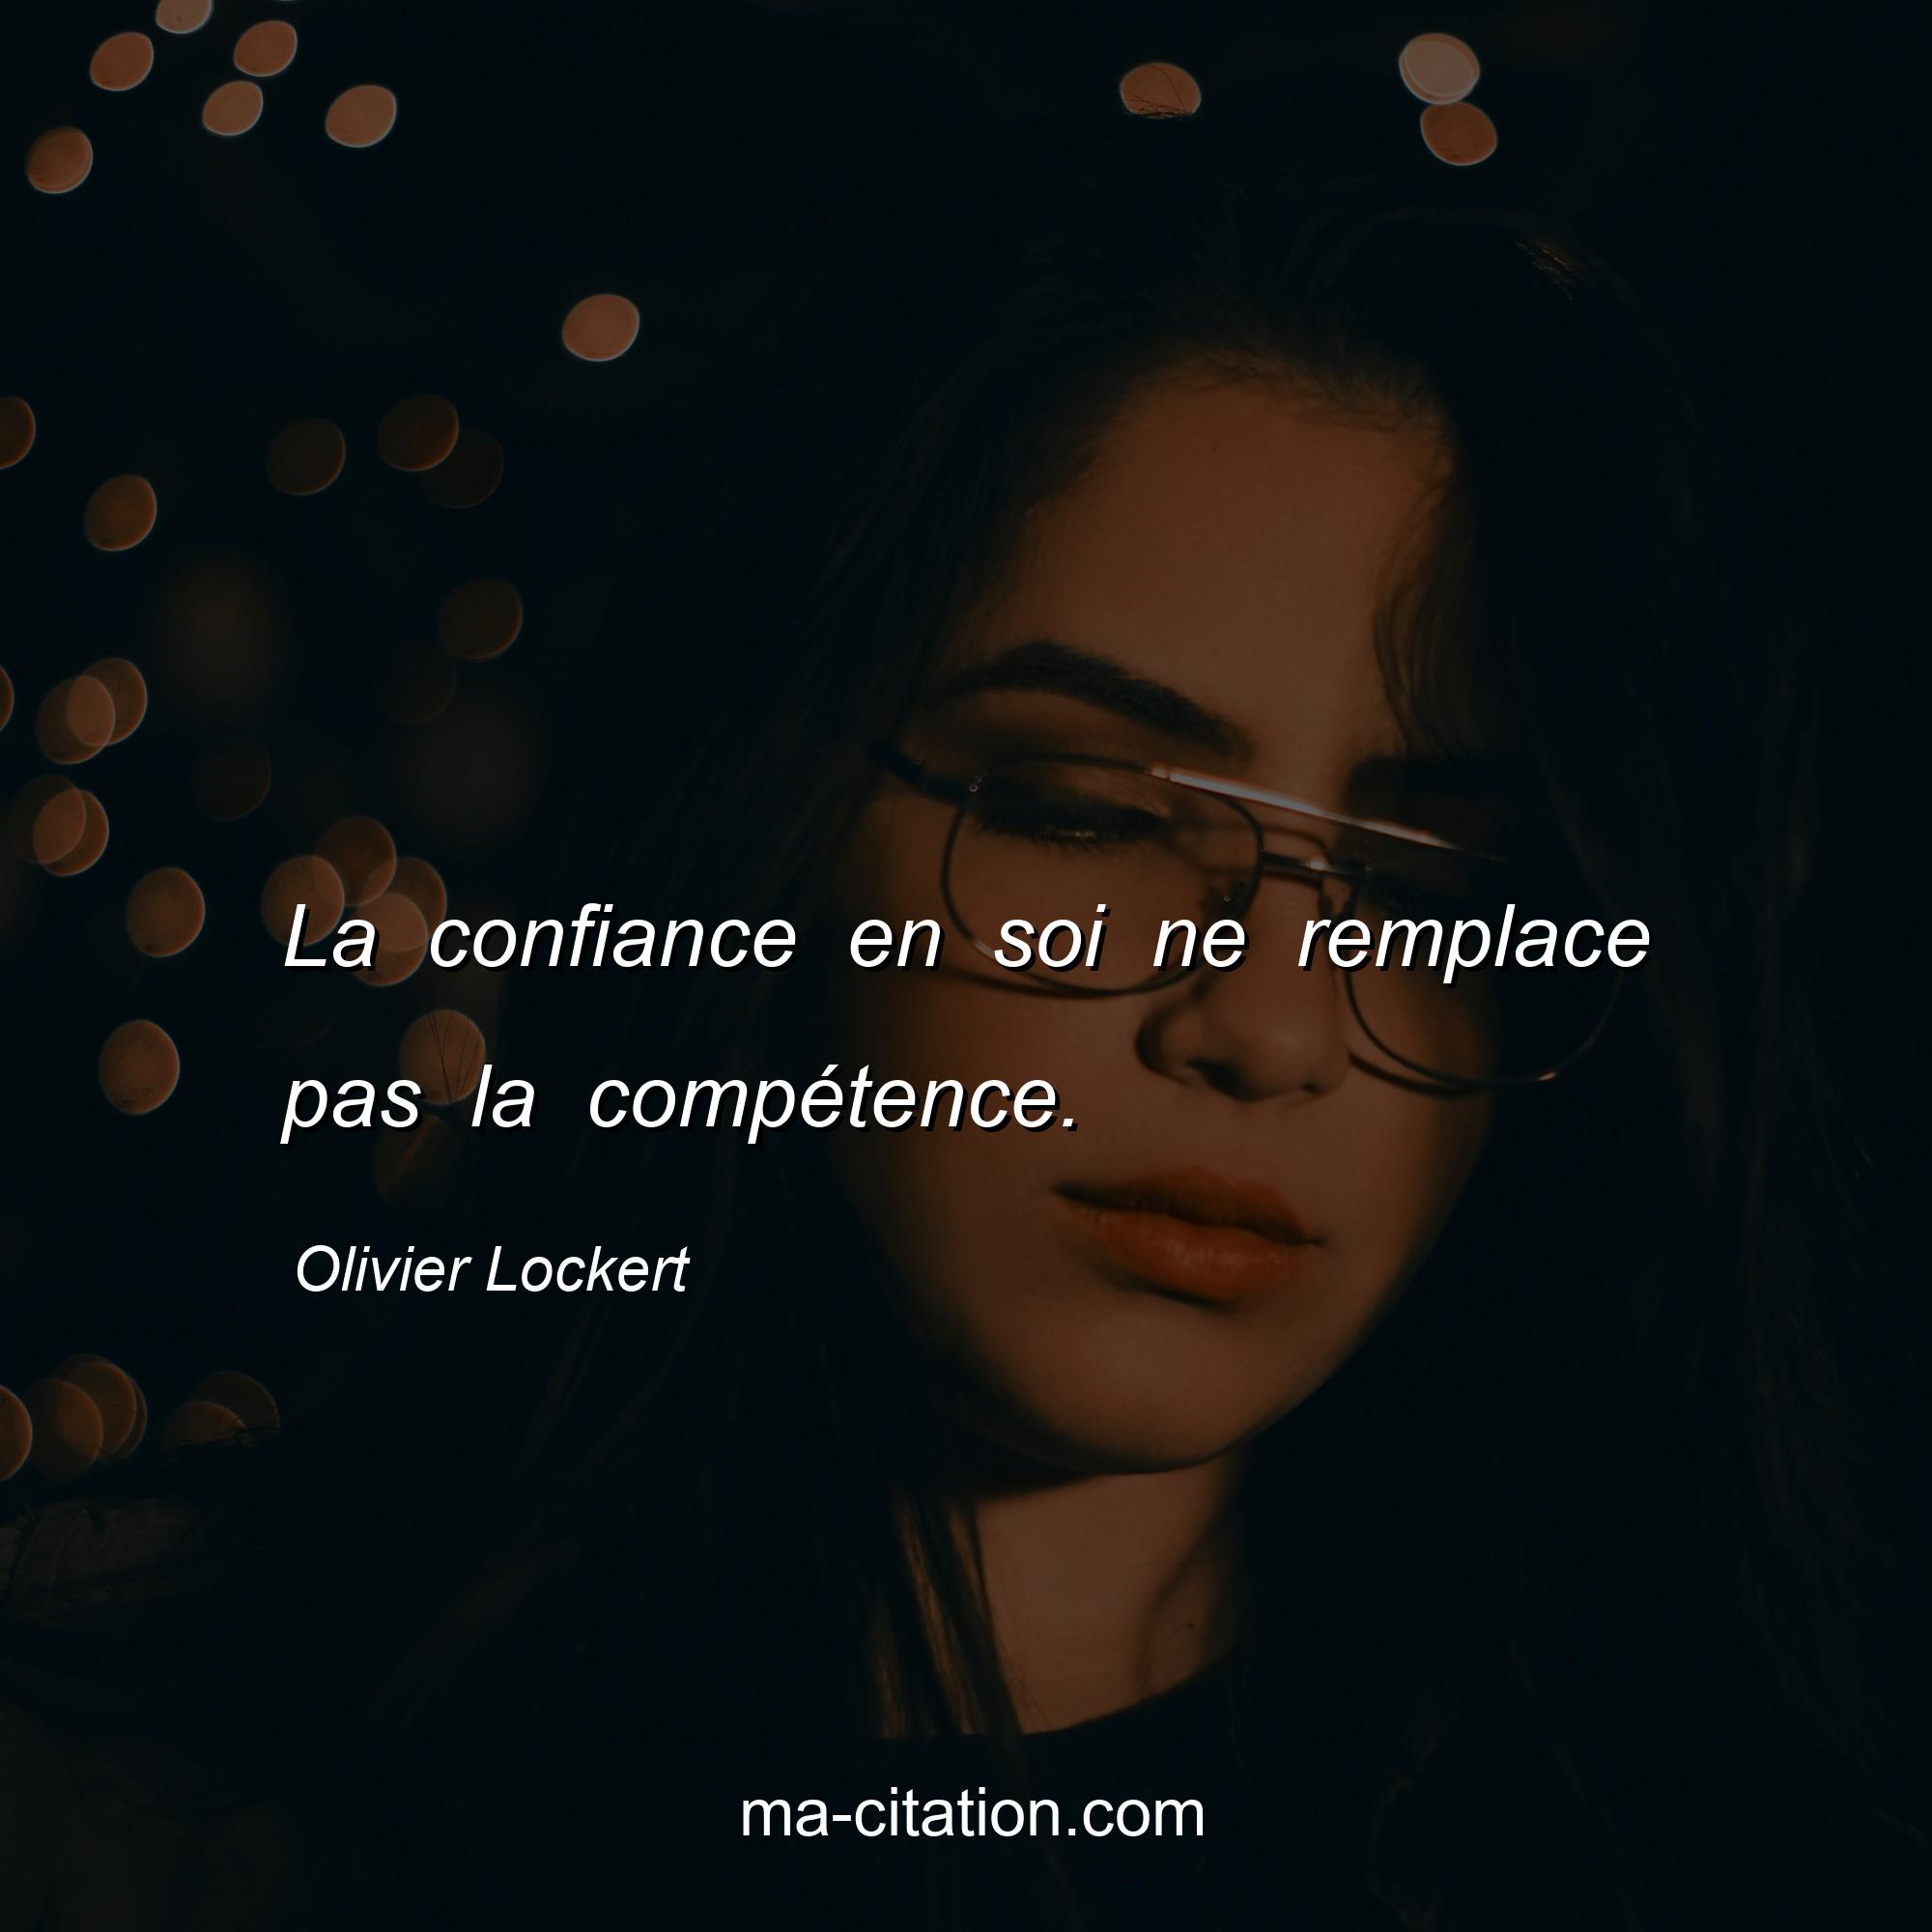 Olivier Lockert : La confiance en soi ne remplace pas la compétence.